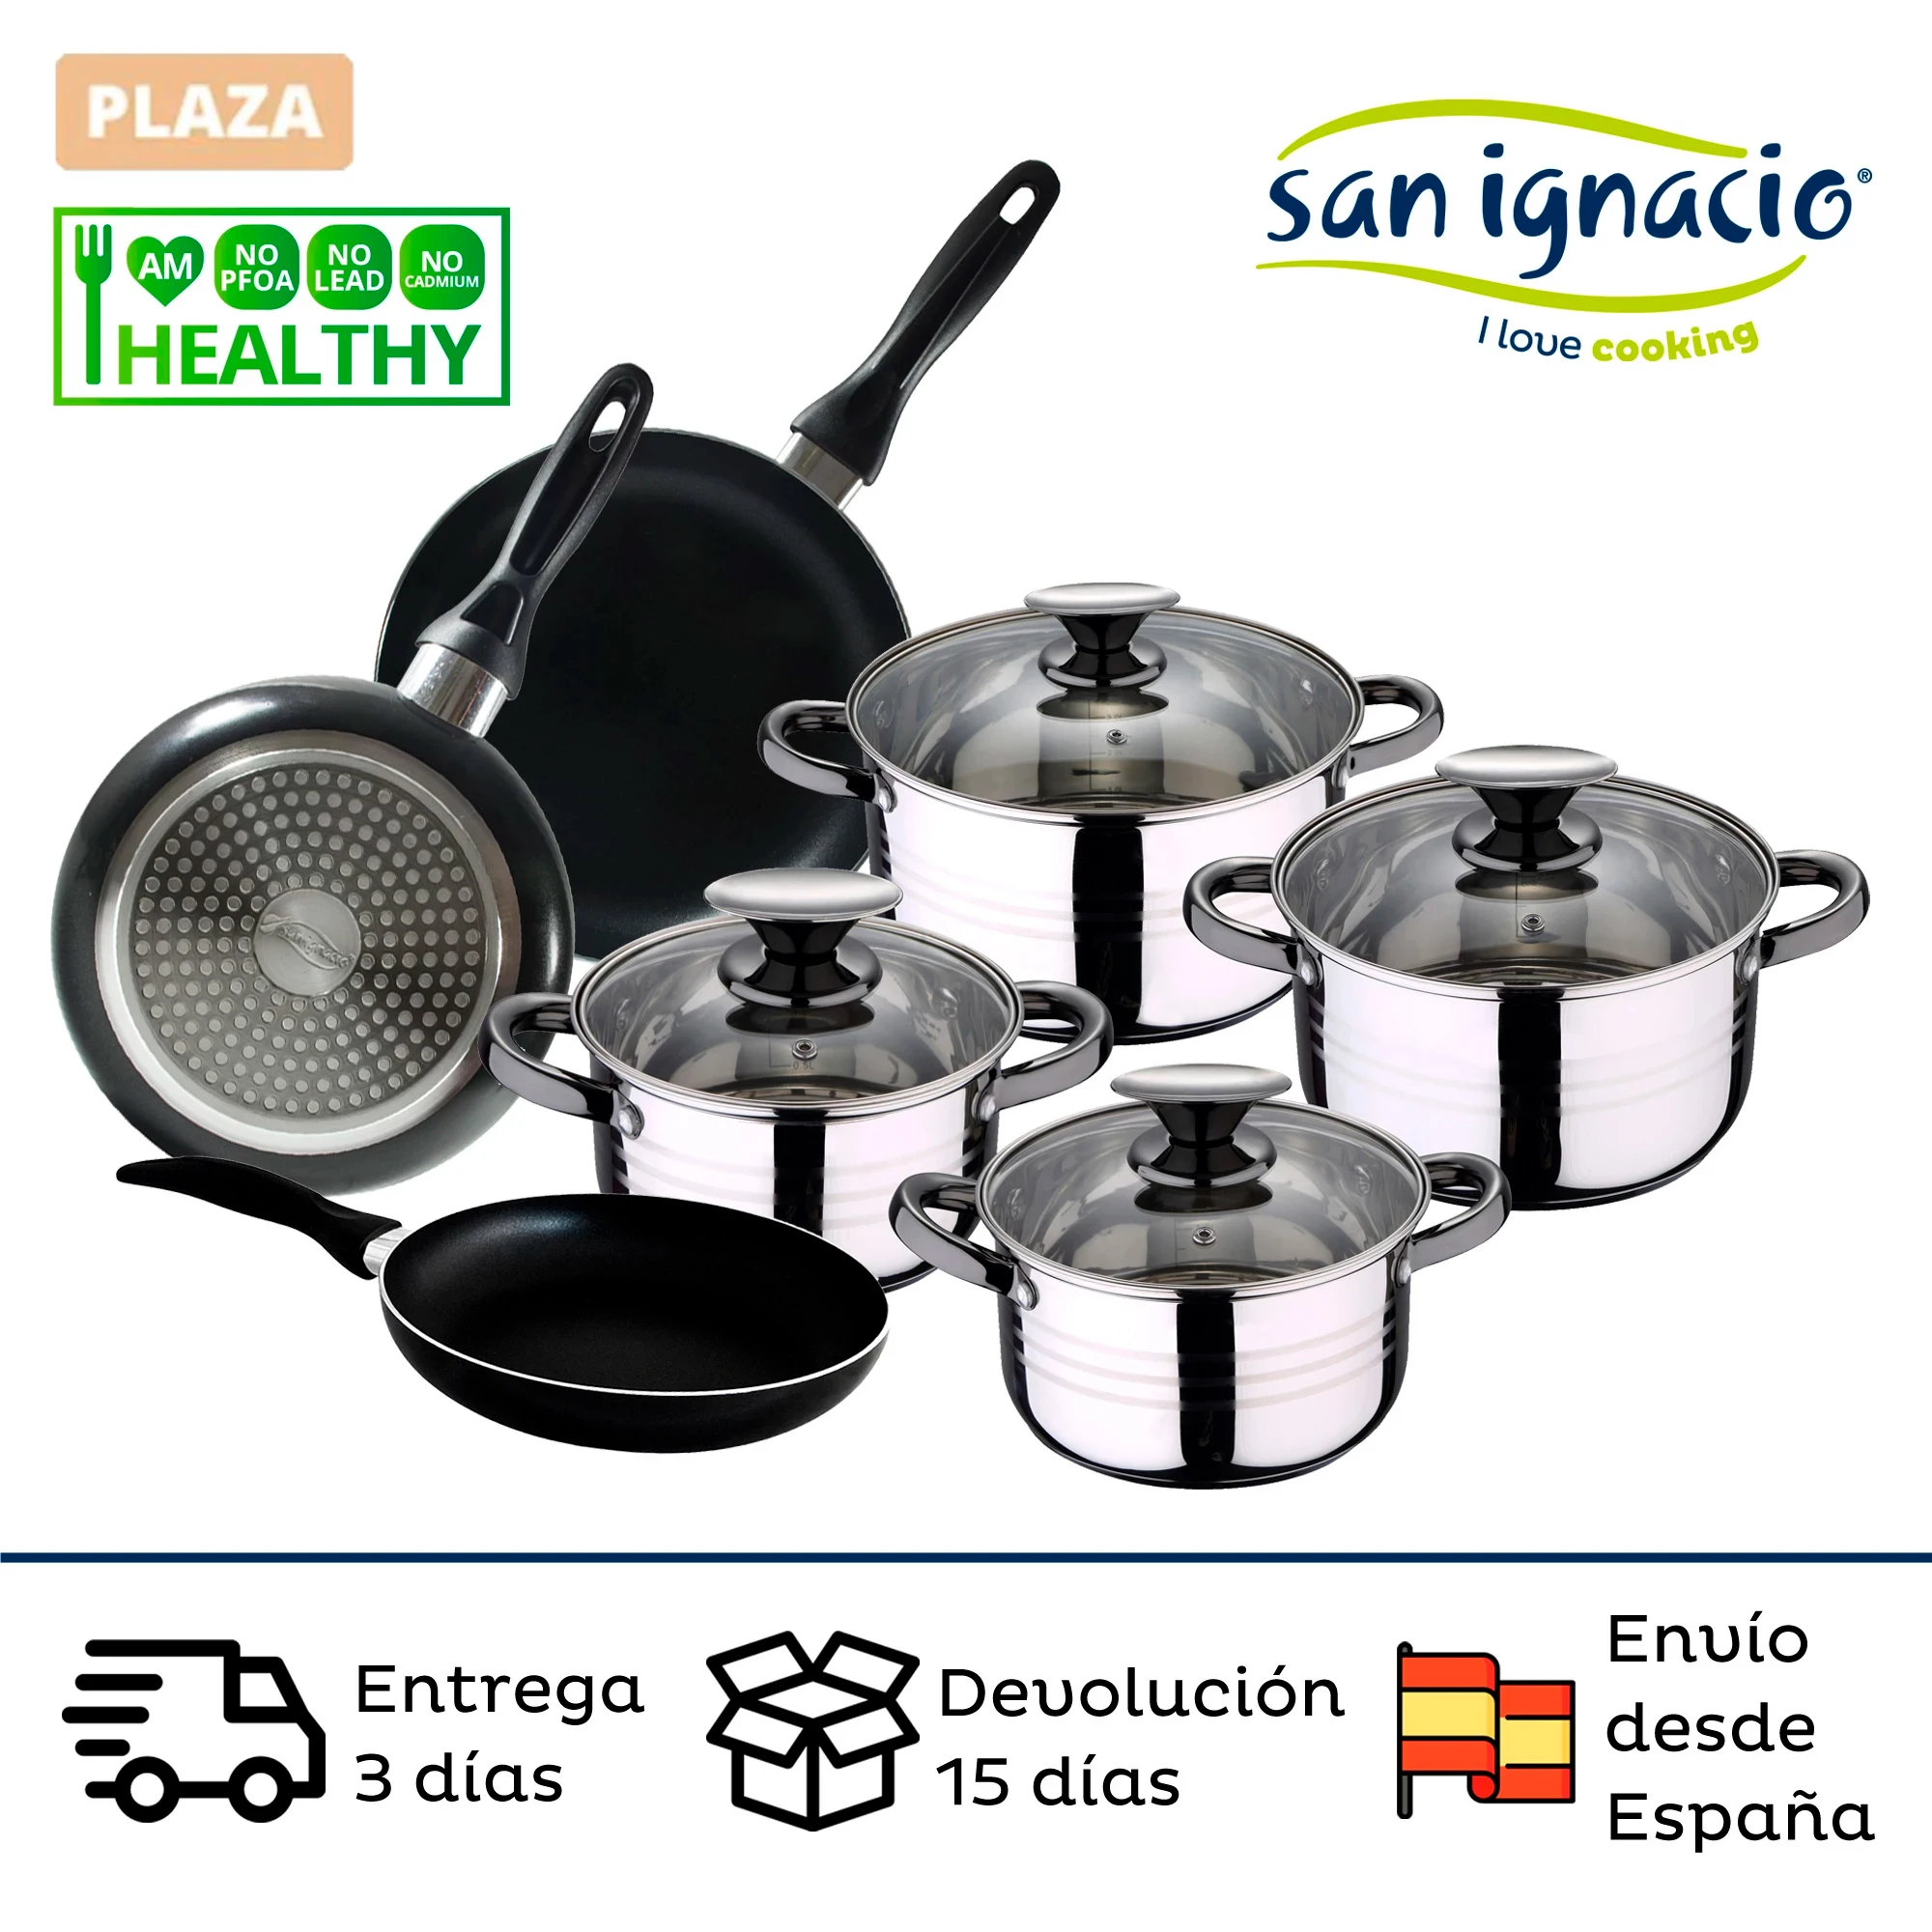 Altea en acero inoxidable con set de 3 utensilios de cocina en nylon PK3237 San Ignacio Bateria de cocina 8 piezas apta para induccion 